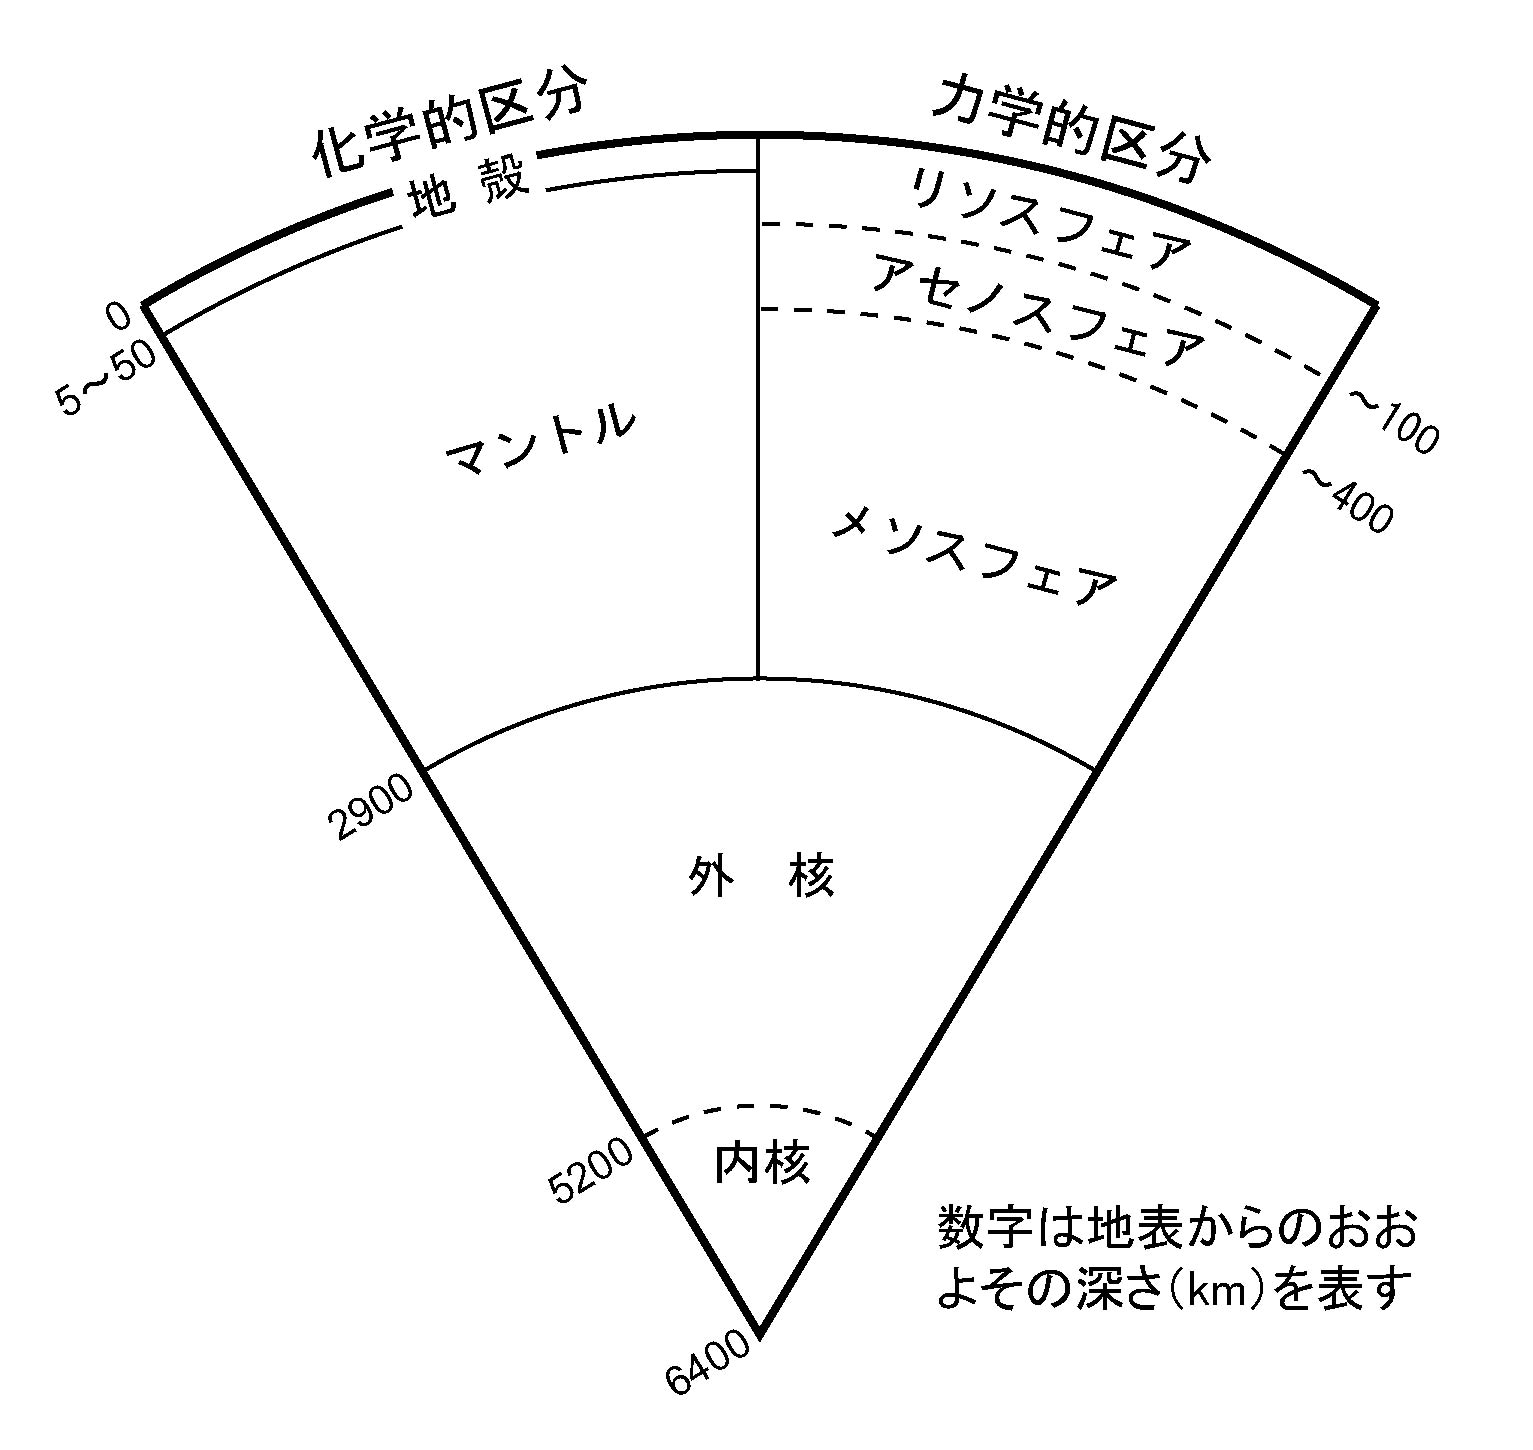 chikyu-kozou.jpg(137828 byte)